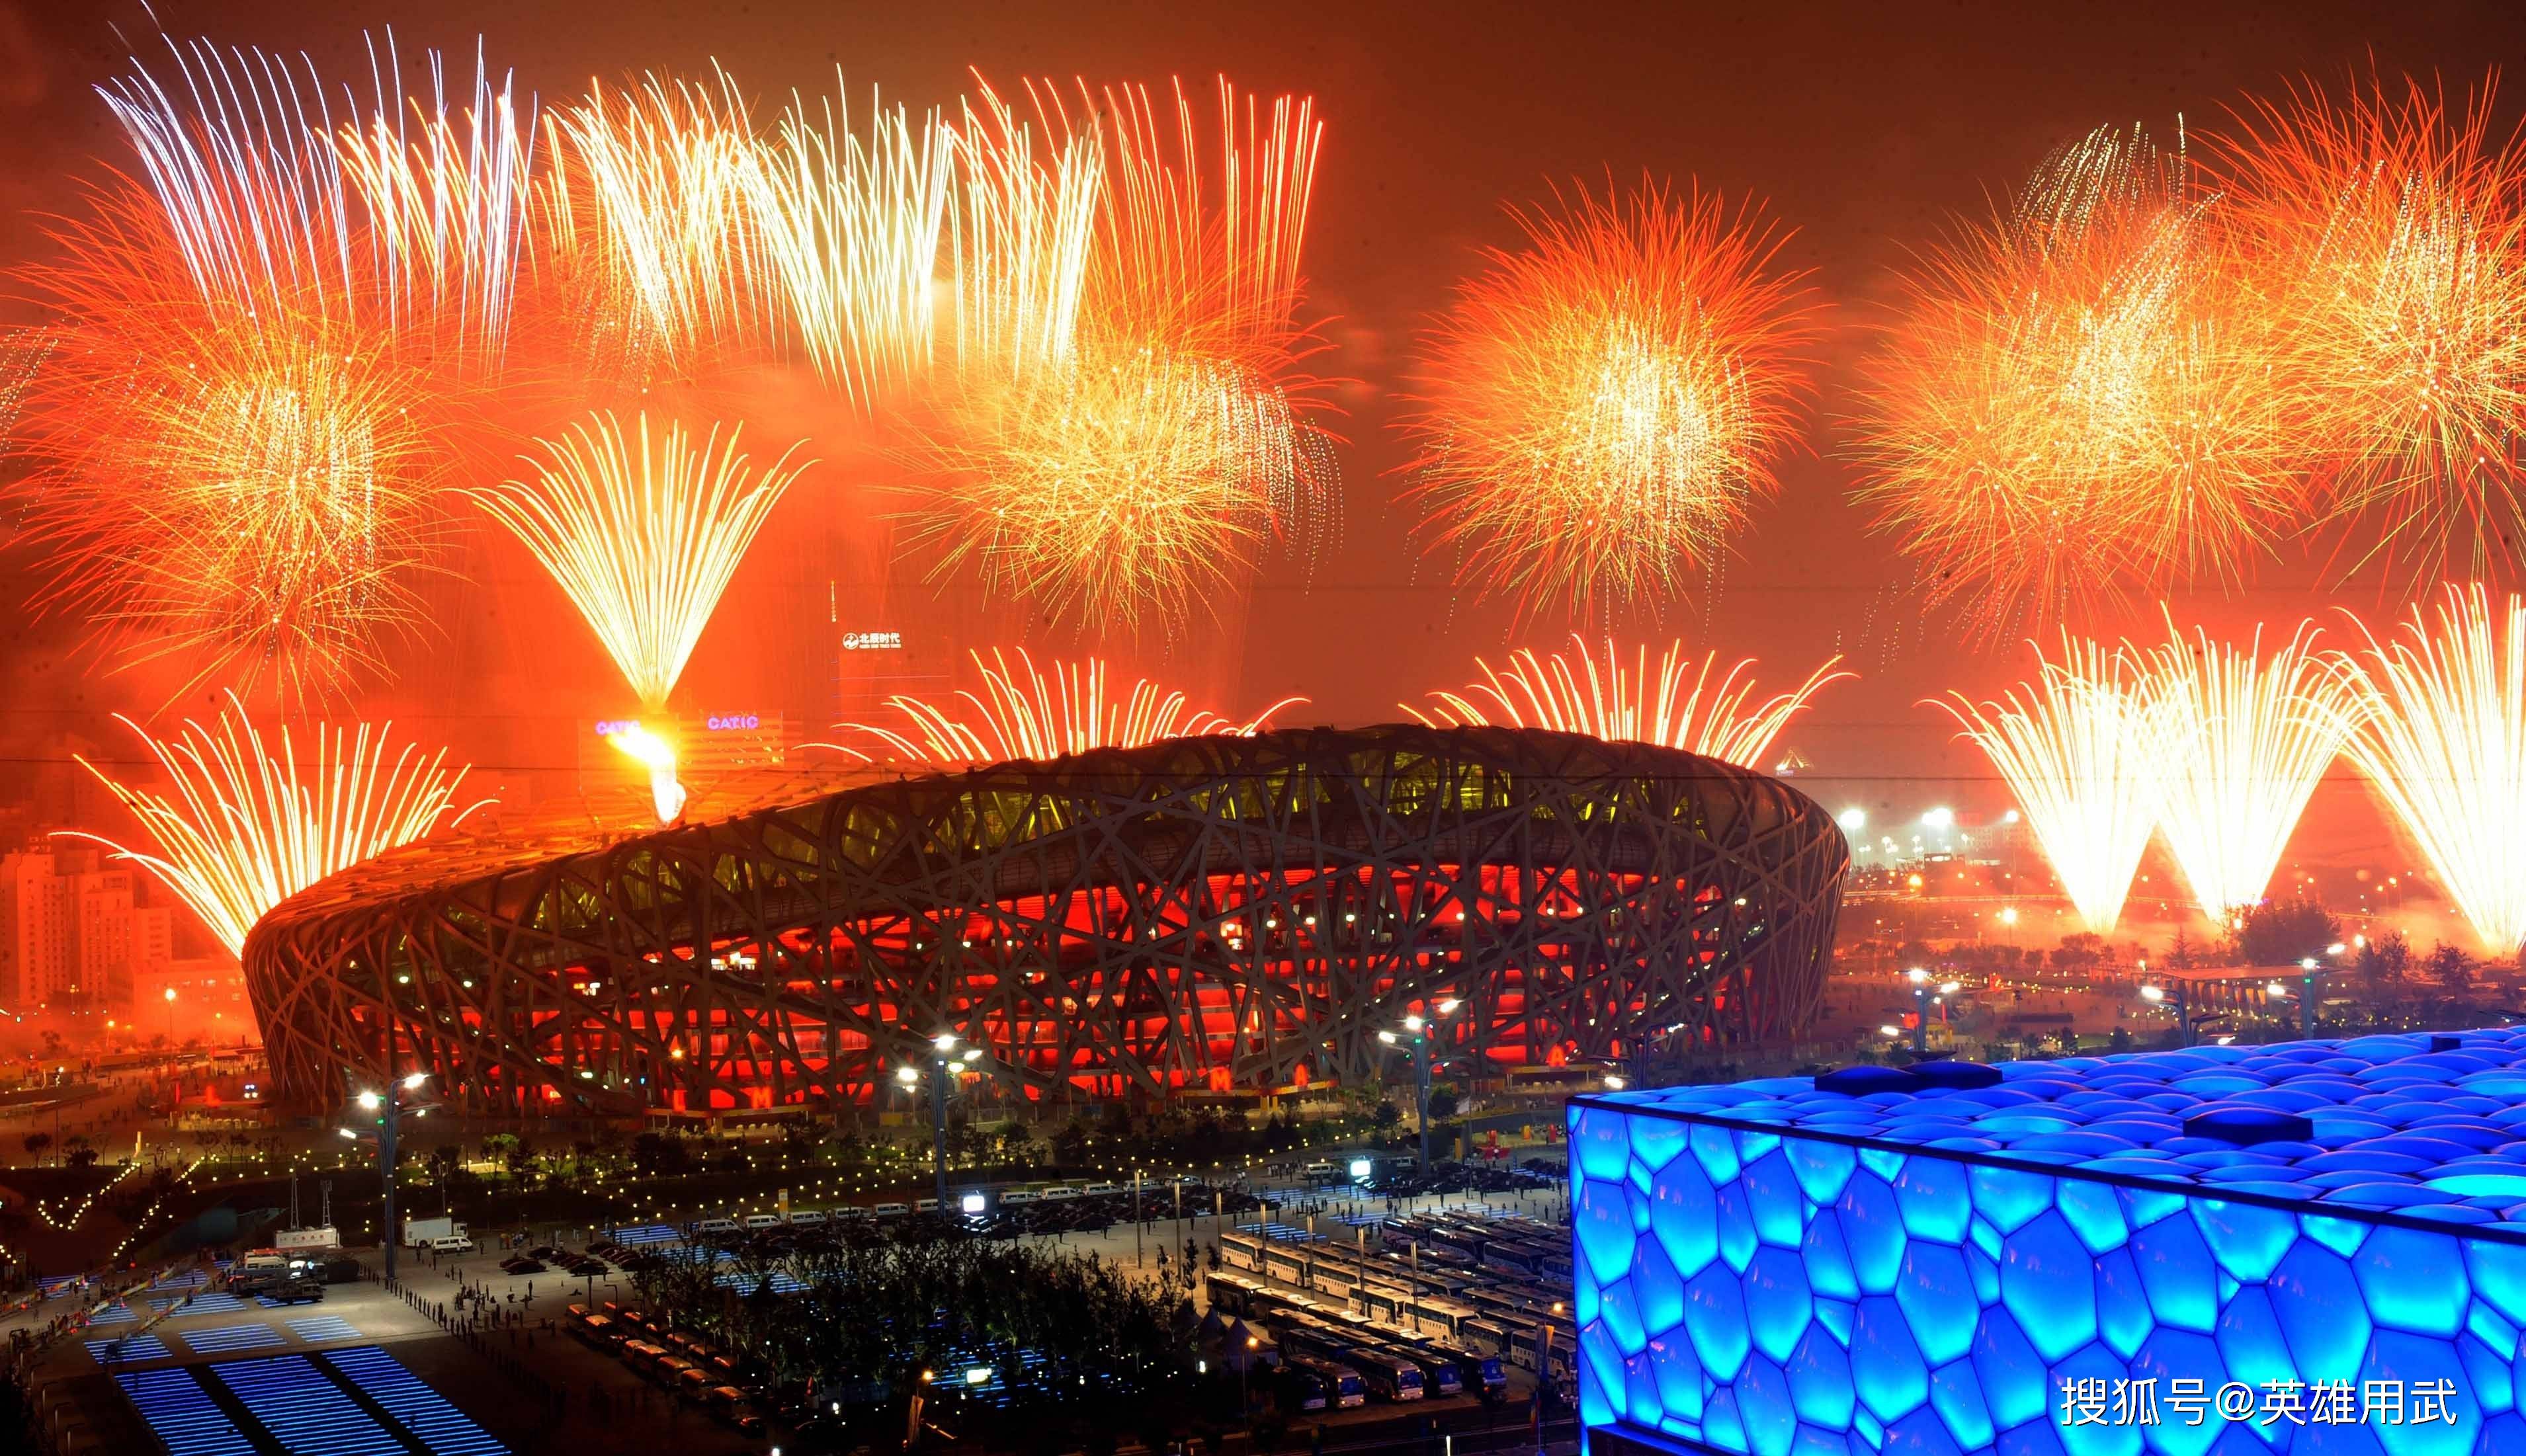 北京冬奥开幕式圣火点燃怎么空灵而浪漫地球之外女航天员天外飞仙般